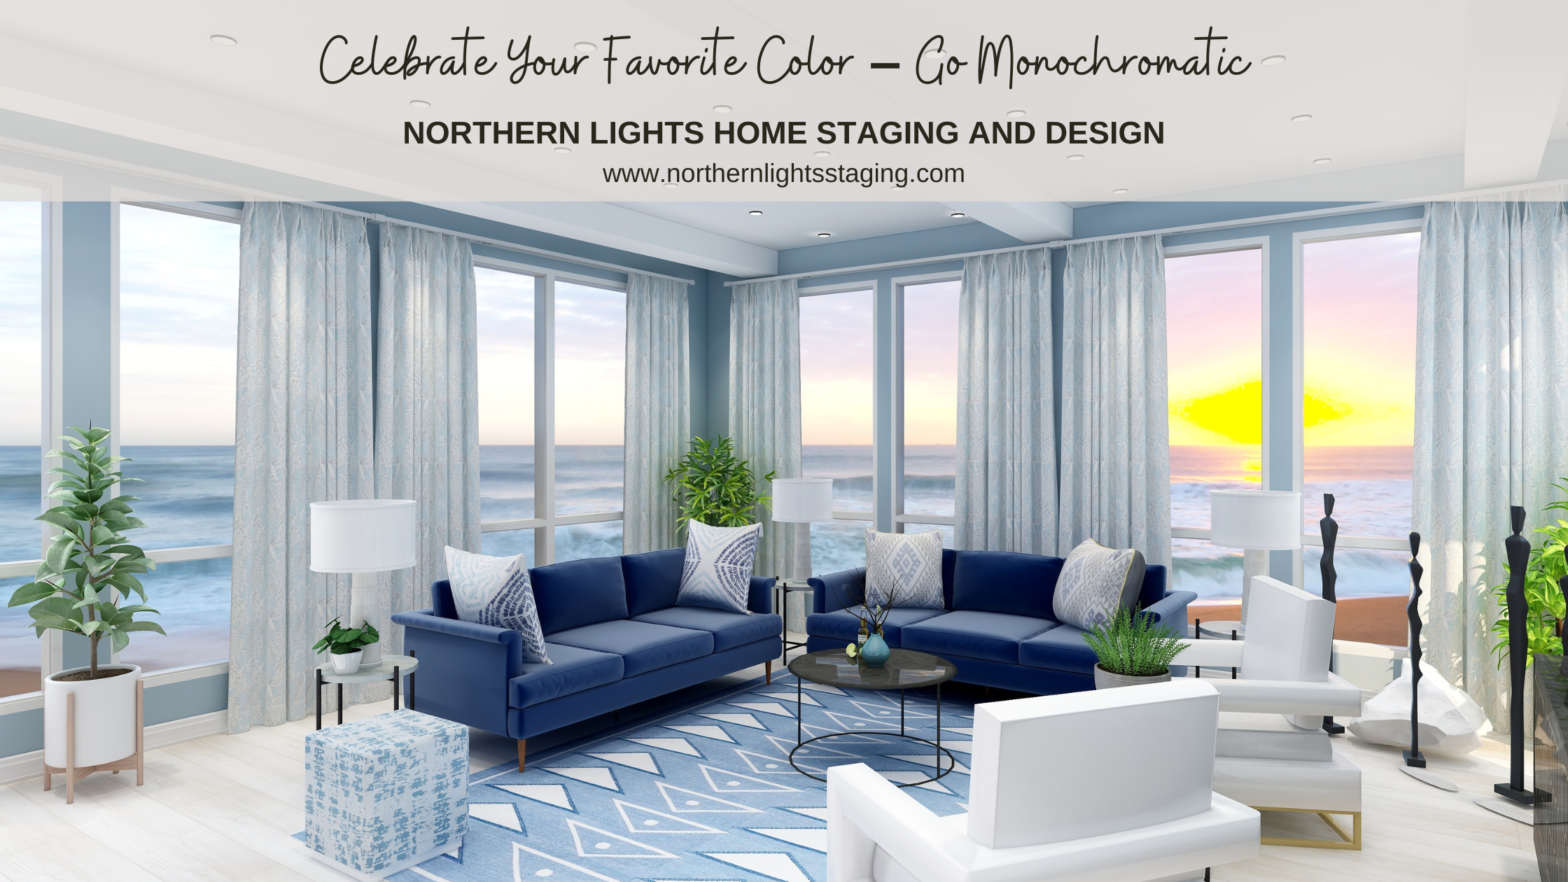 Celebrate your favorite color- go monochromatic!